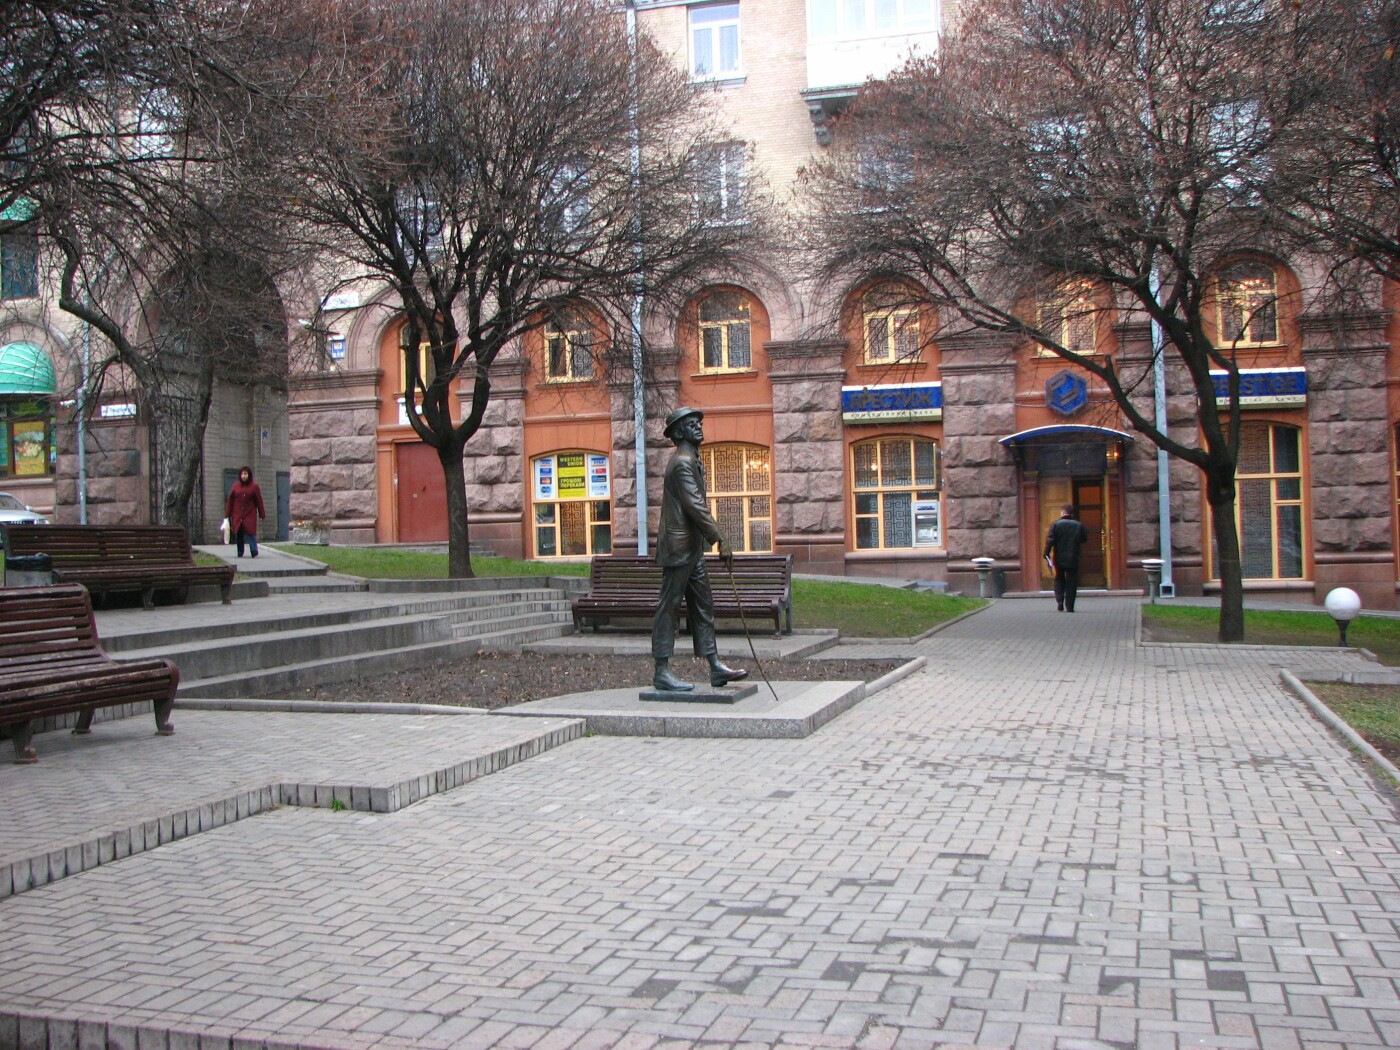 Памятник Паниковскому в Киеве